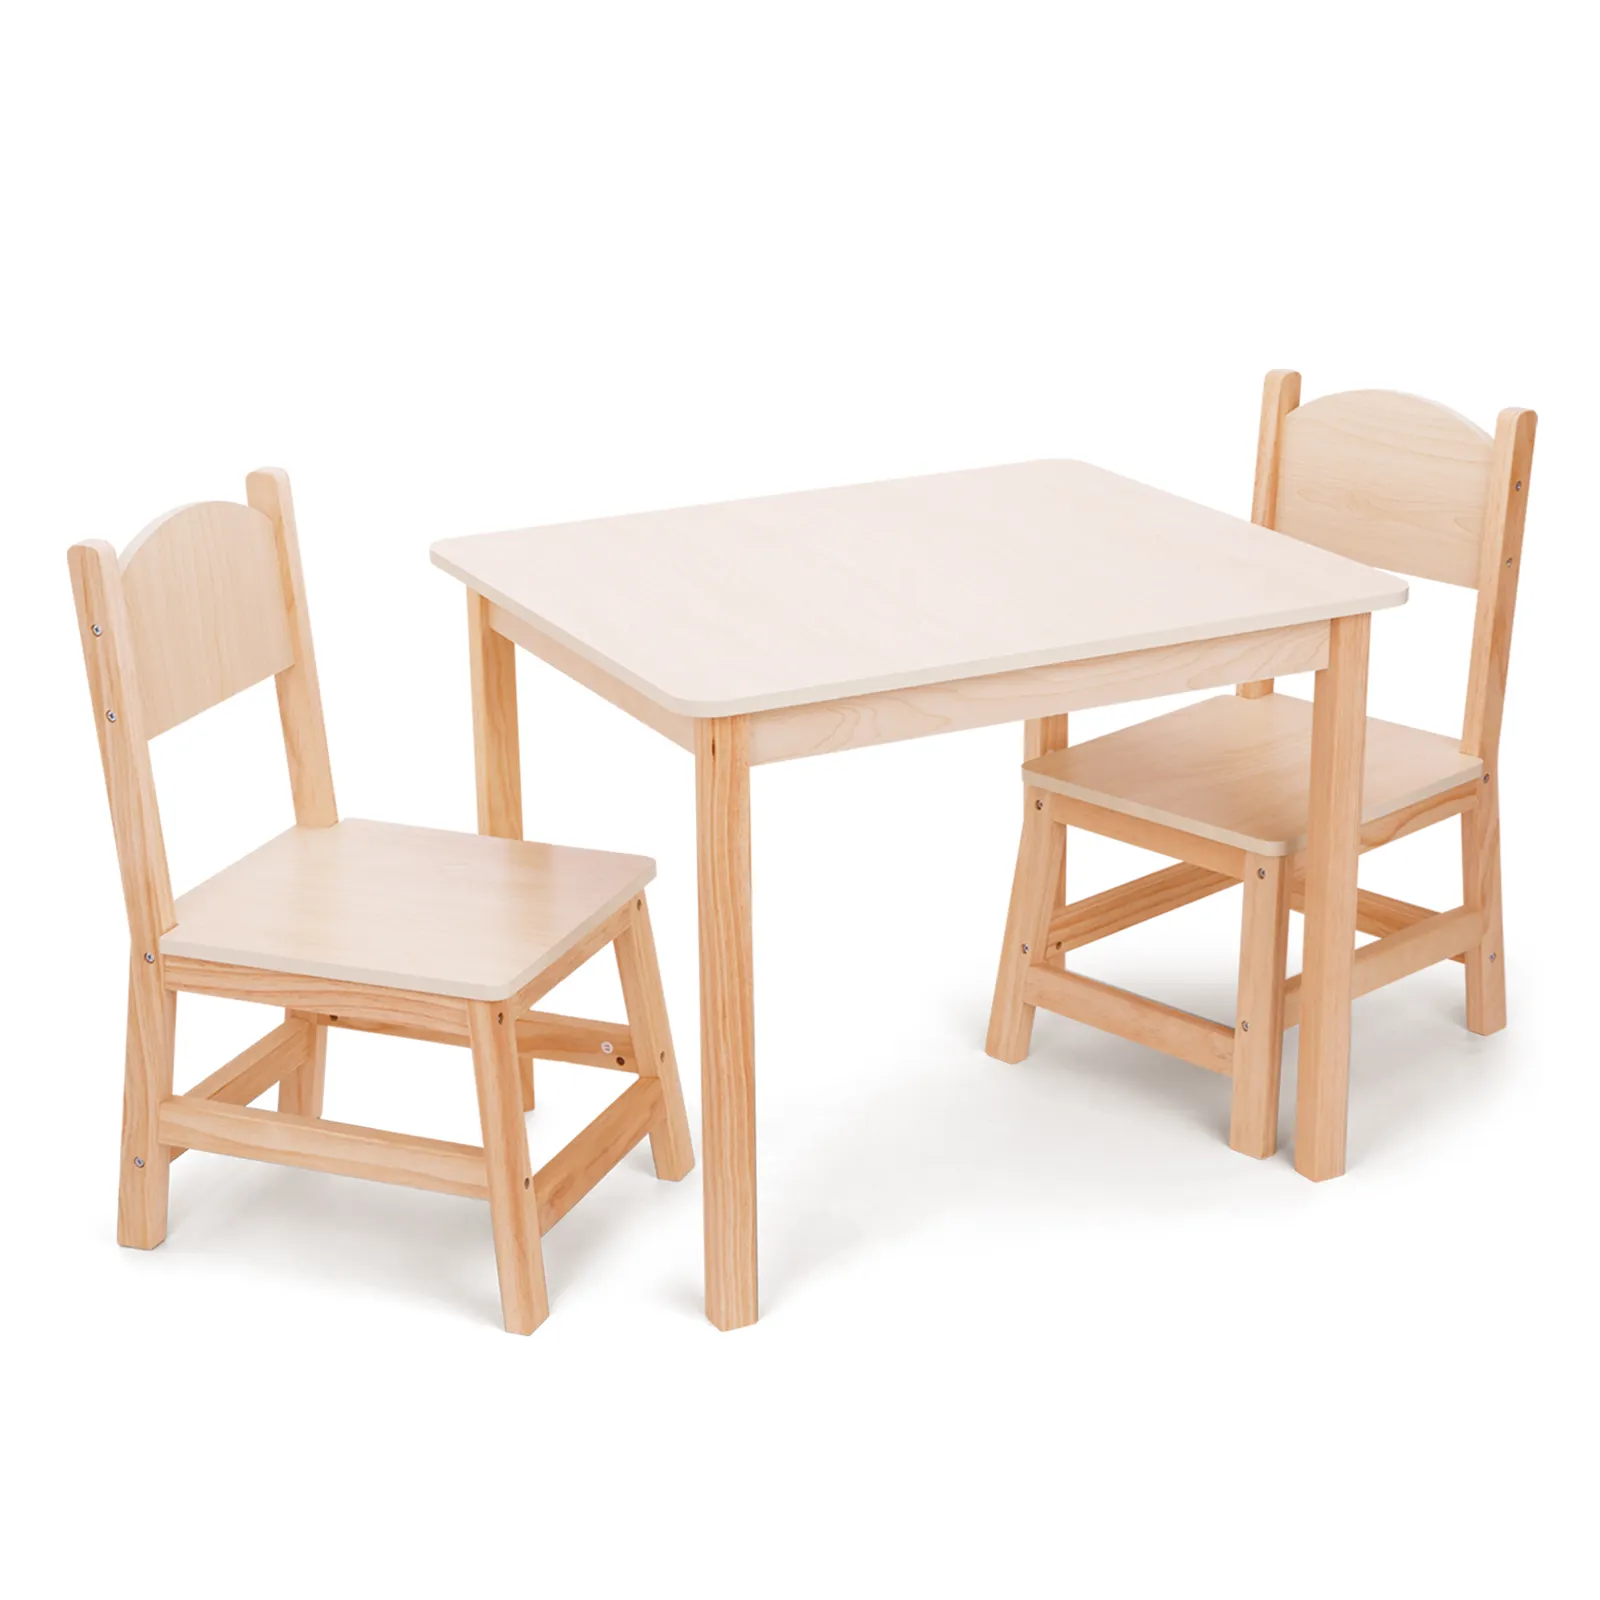 Ensemble de meubles en bois pour enfants chaise et table en bois pour enfants pour garderie salle de classe maternelle